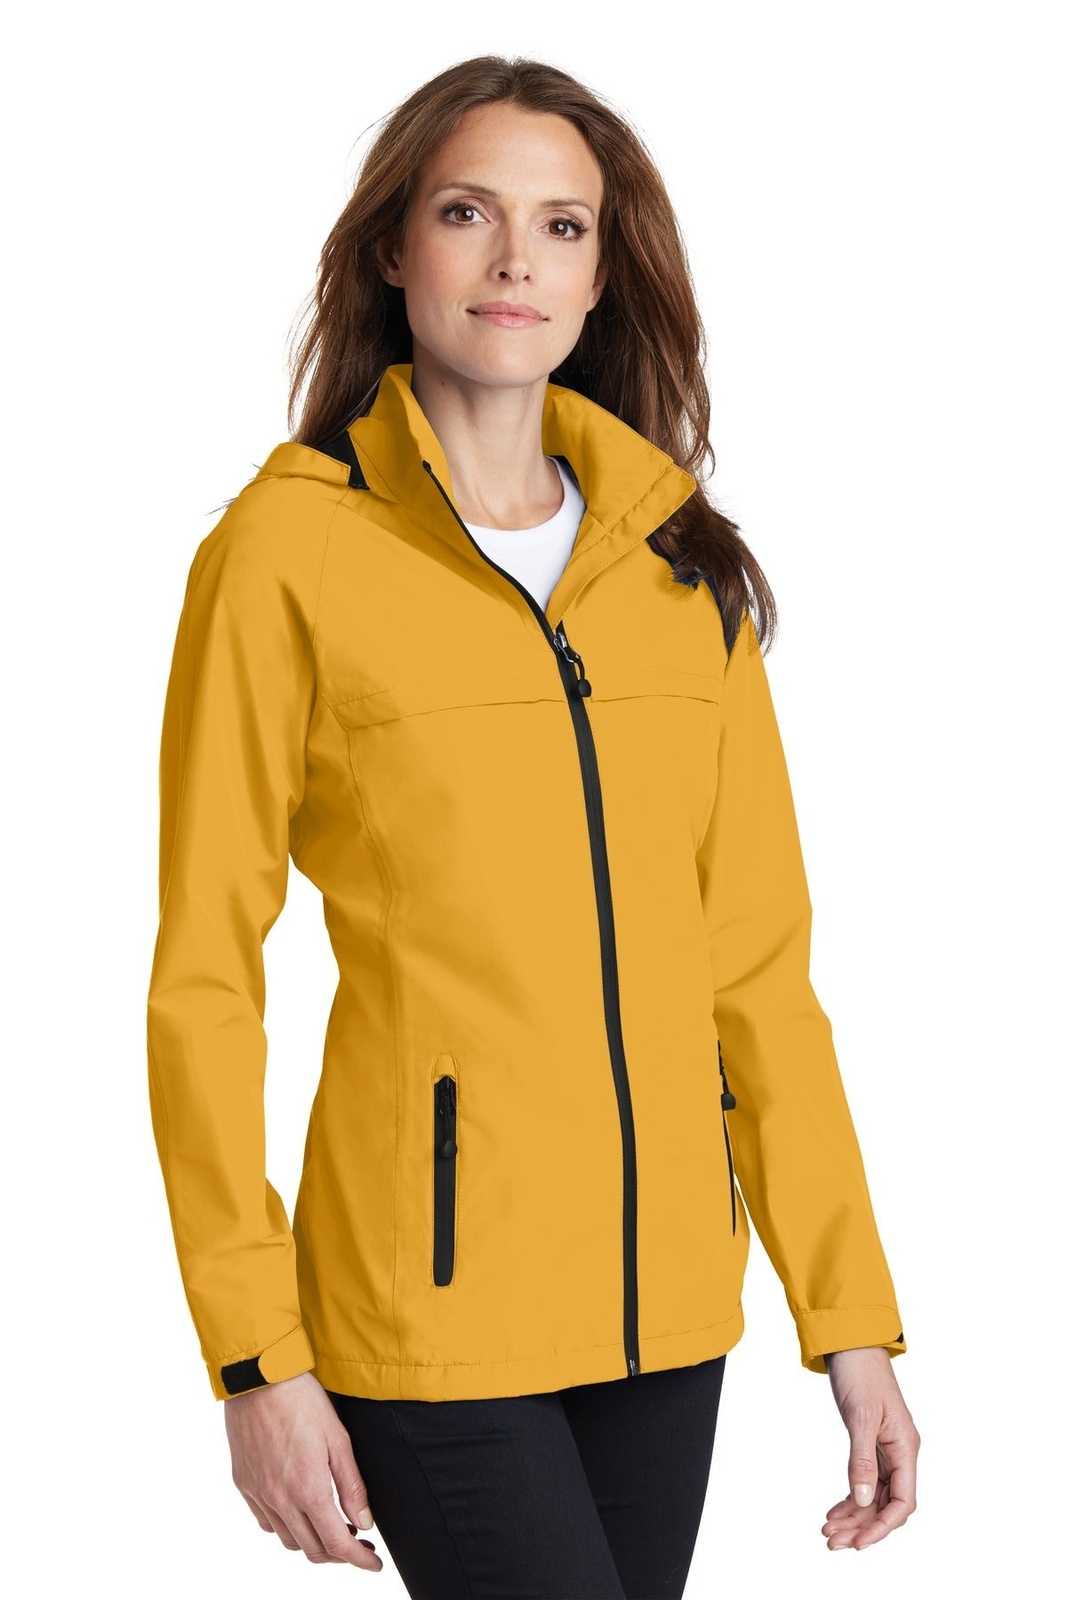 Port Authority L333 Ladies Torrent Waterproof Jacket - Slicker Yellow - HIT a Double - 4